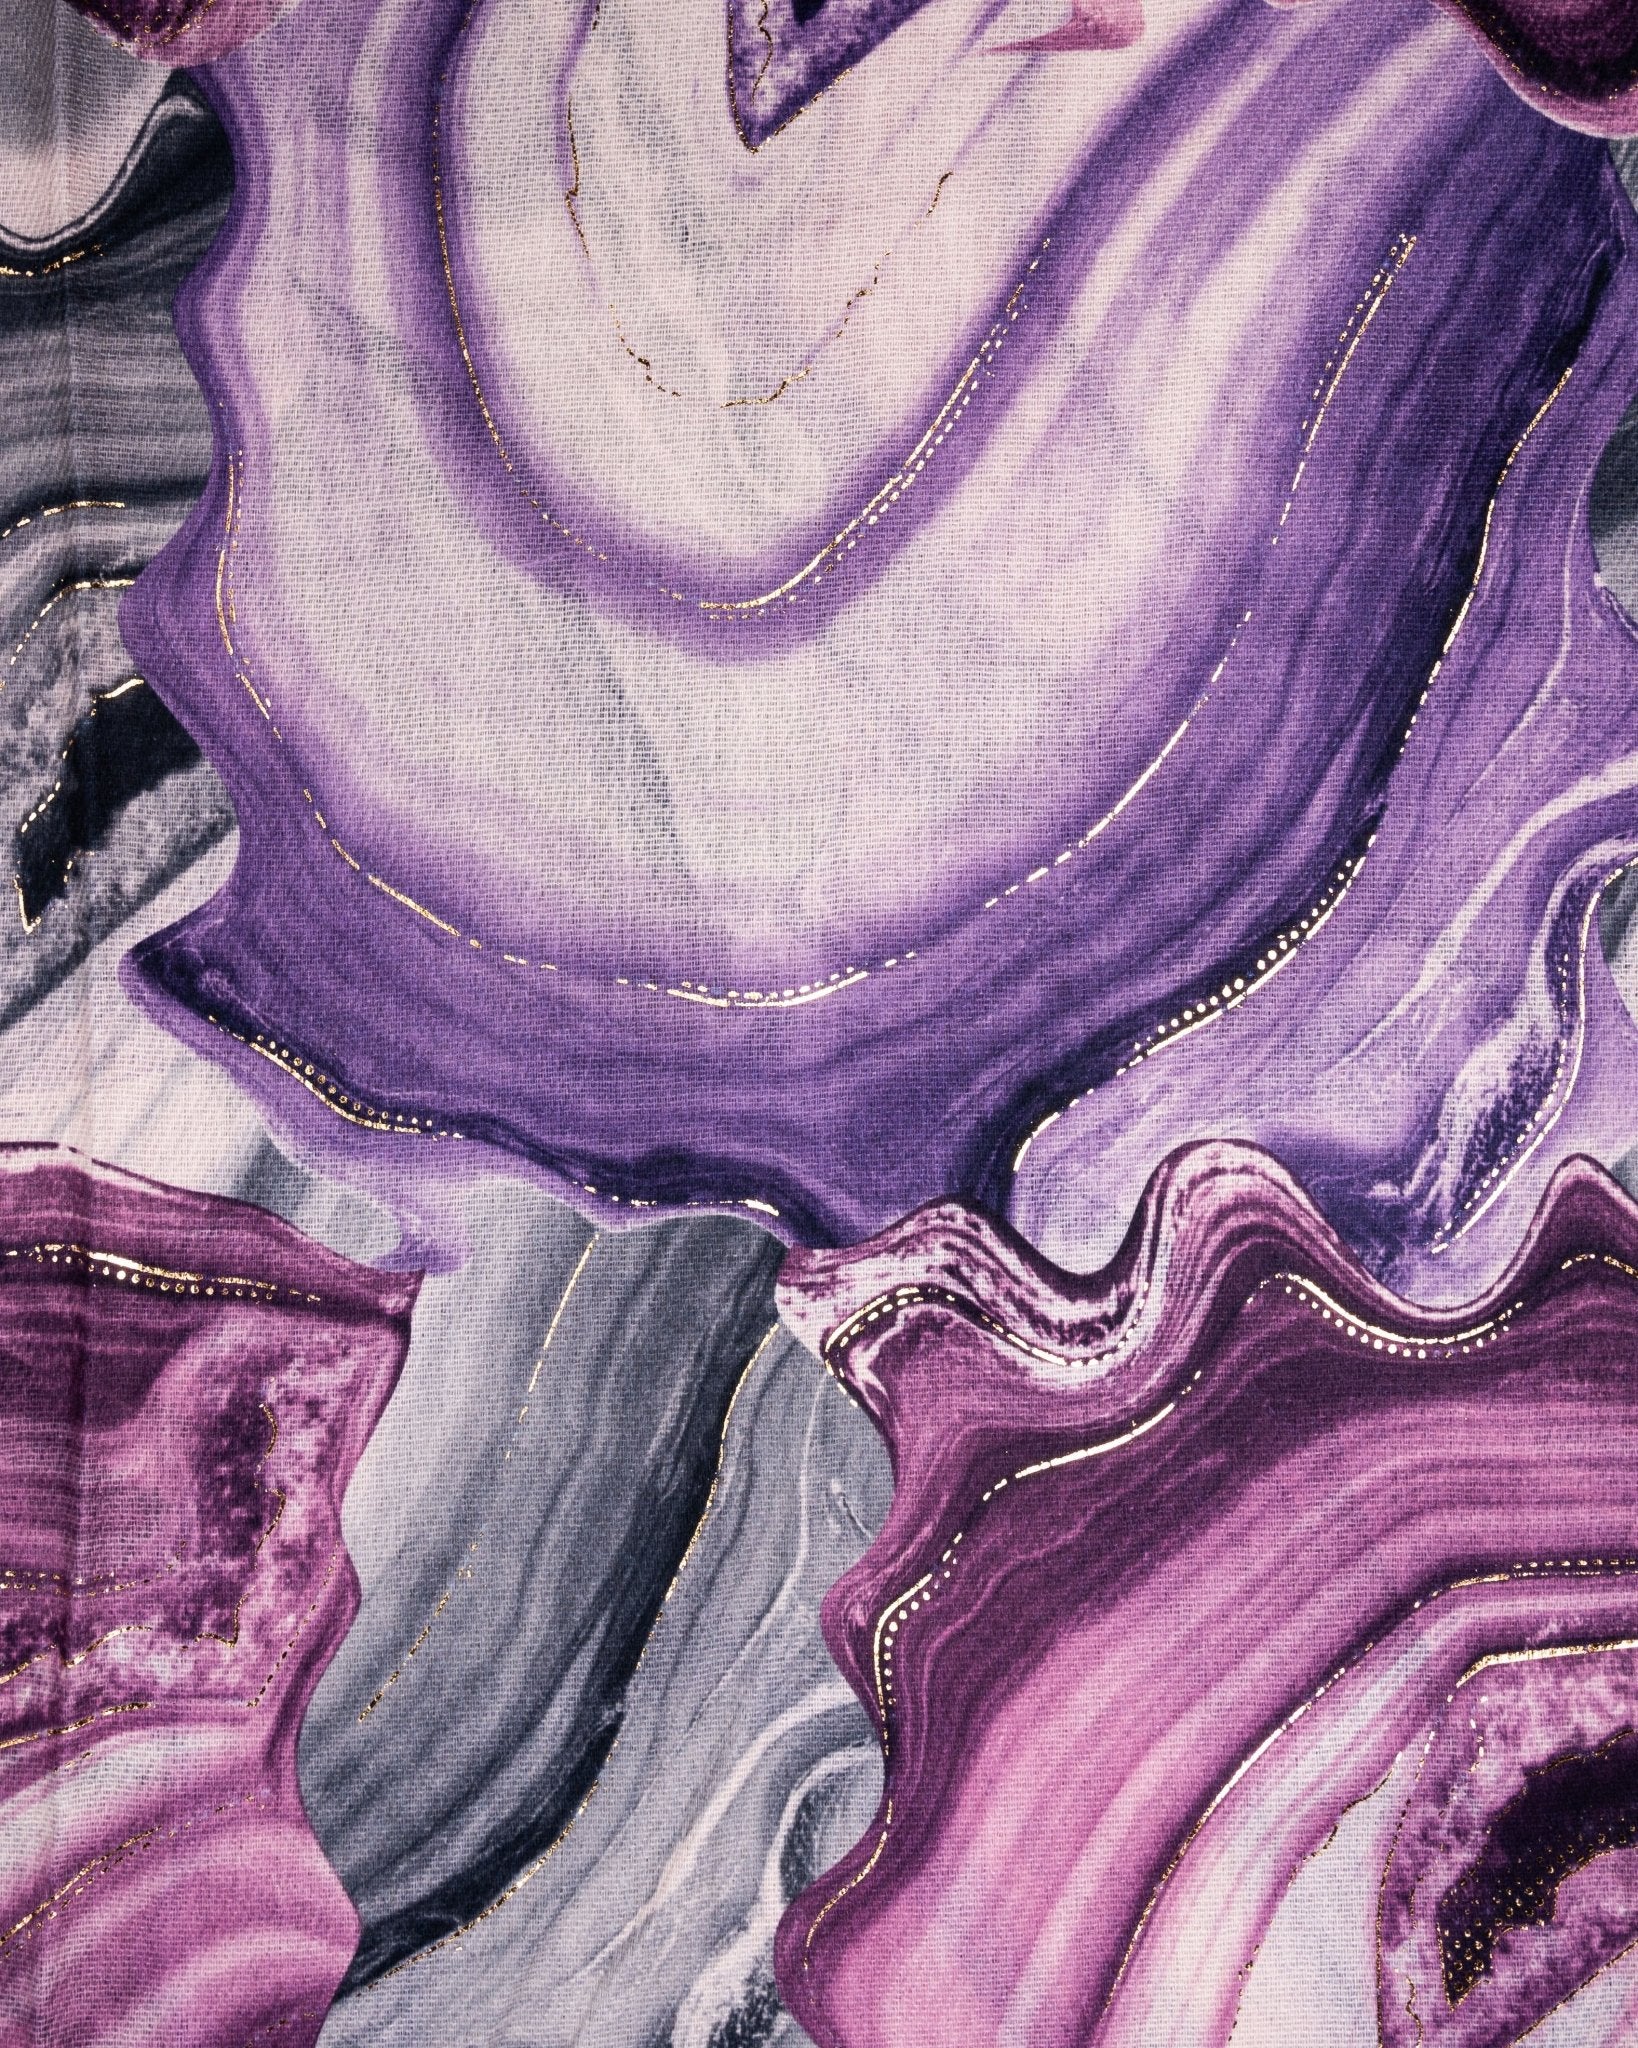 Sciarpa con stampe marmorizzate tono viola - Mya Accessories